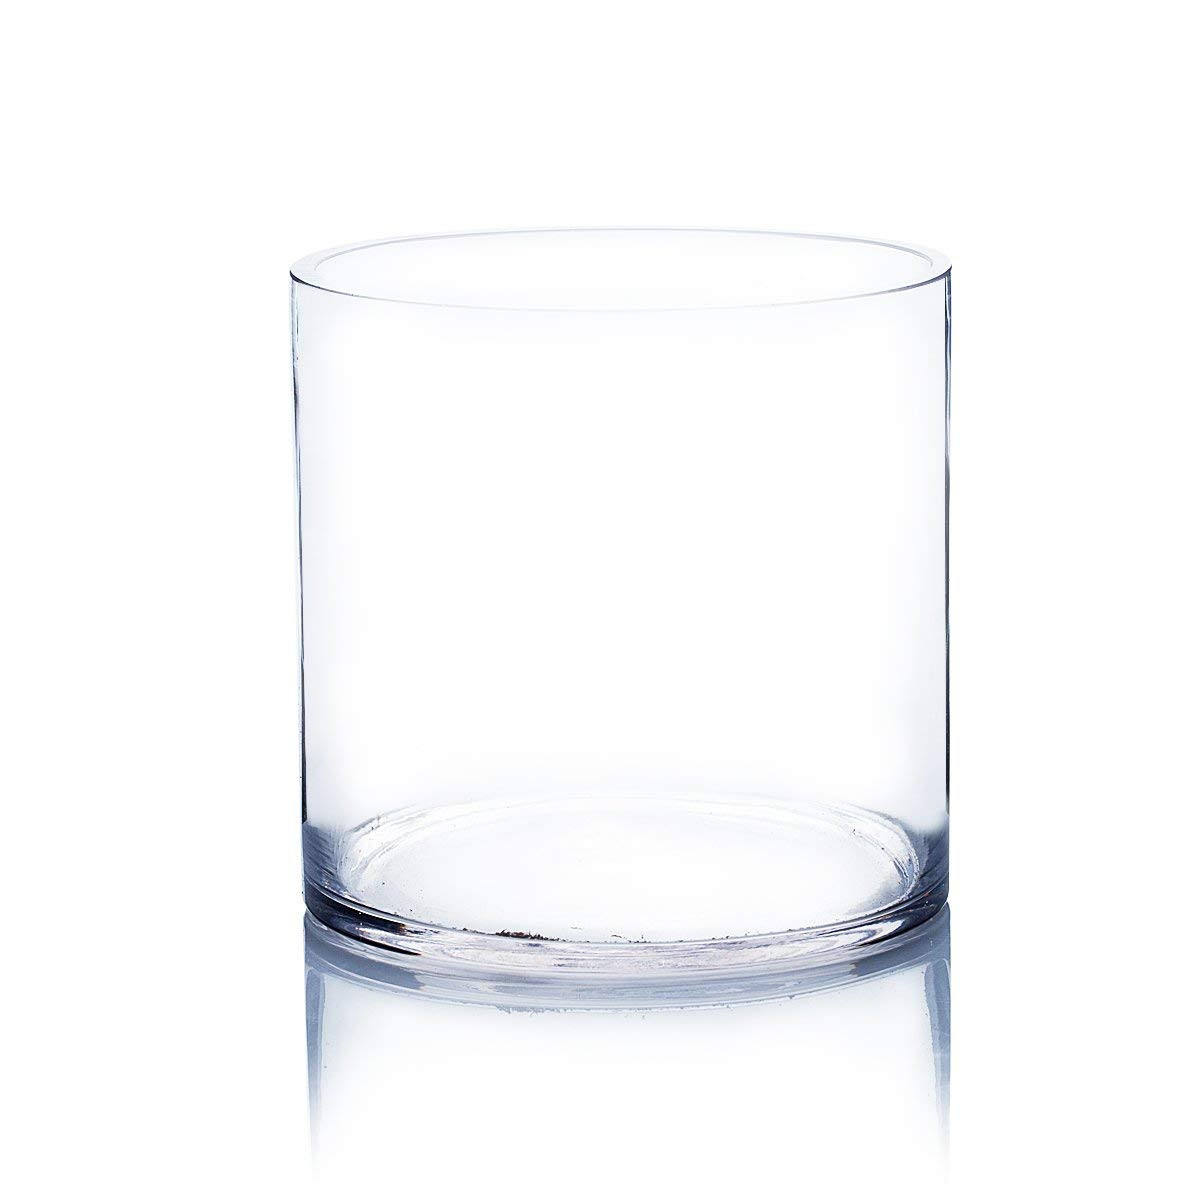 29 Lovable 6x6 Glass Vase 2022 free download 6x6 glass vase of amazon com cylinder vase h 6 d 6 12 pcs home kitchen for 51ggutzlial sl1200